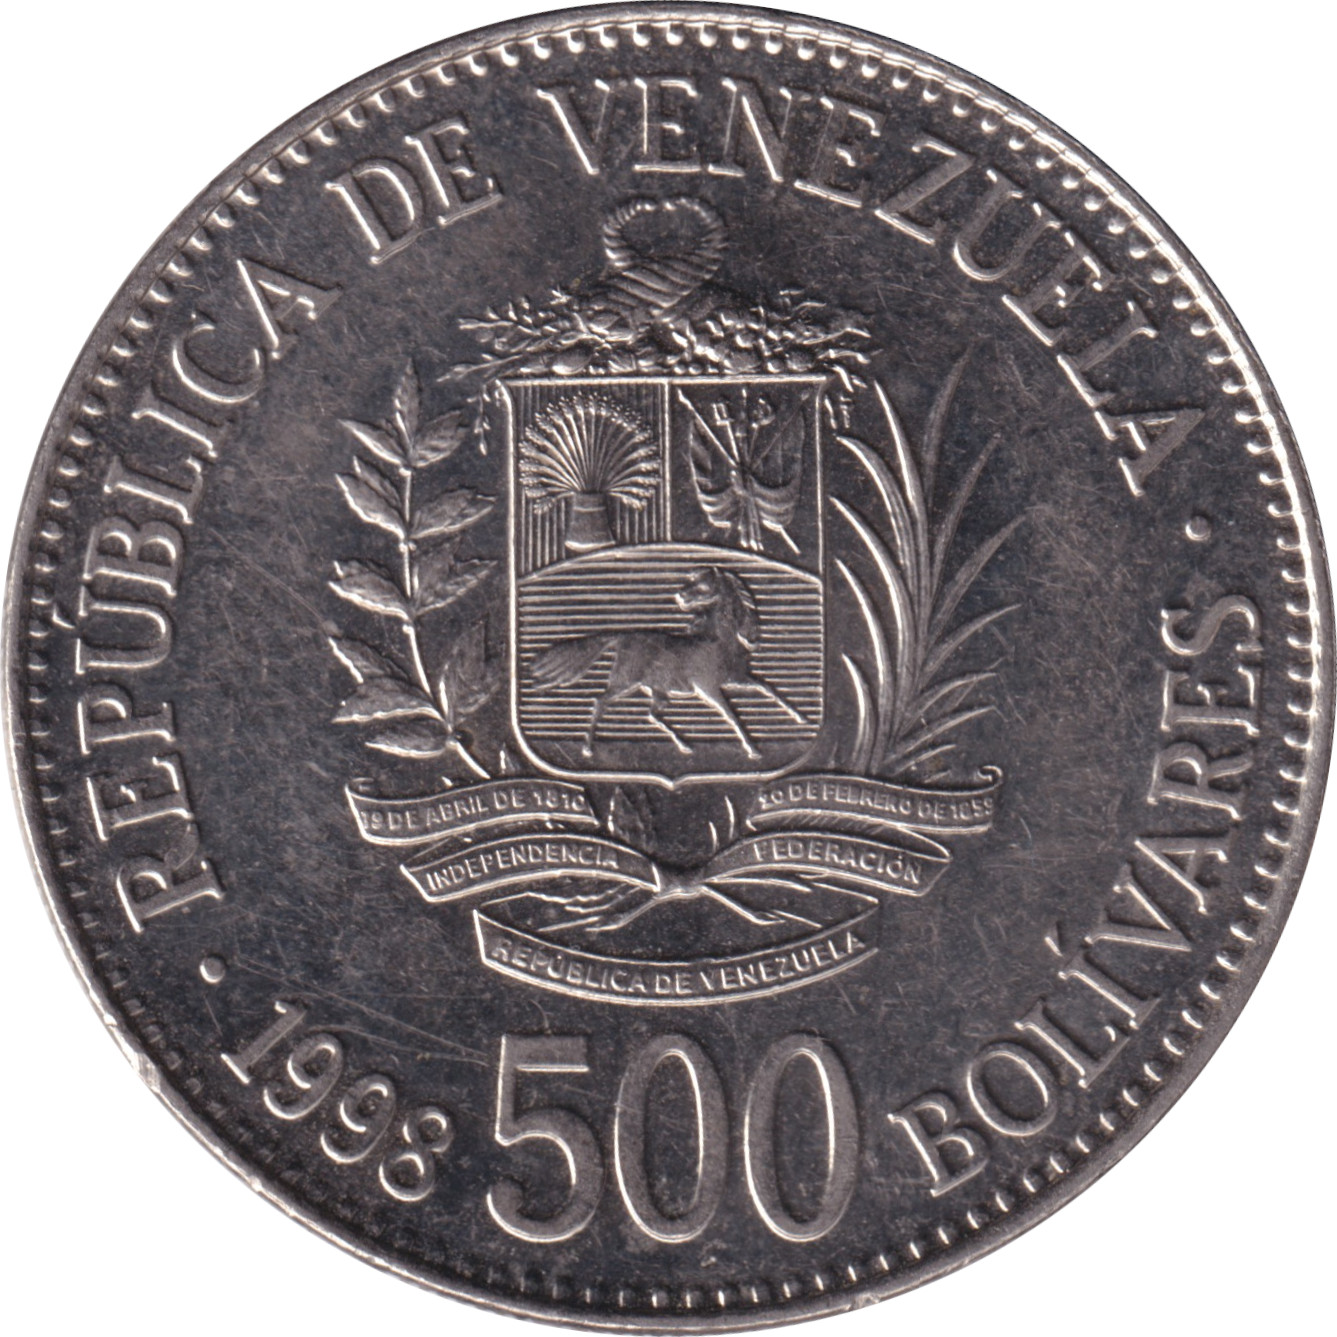 500 bolivares - Simon Bolivar - Grand blason